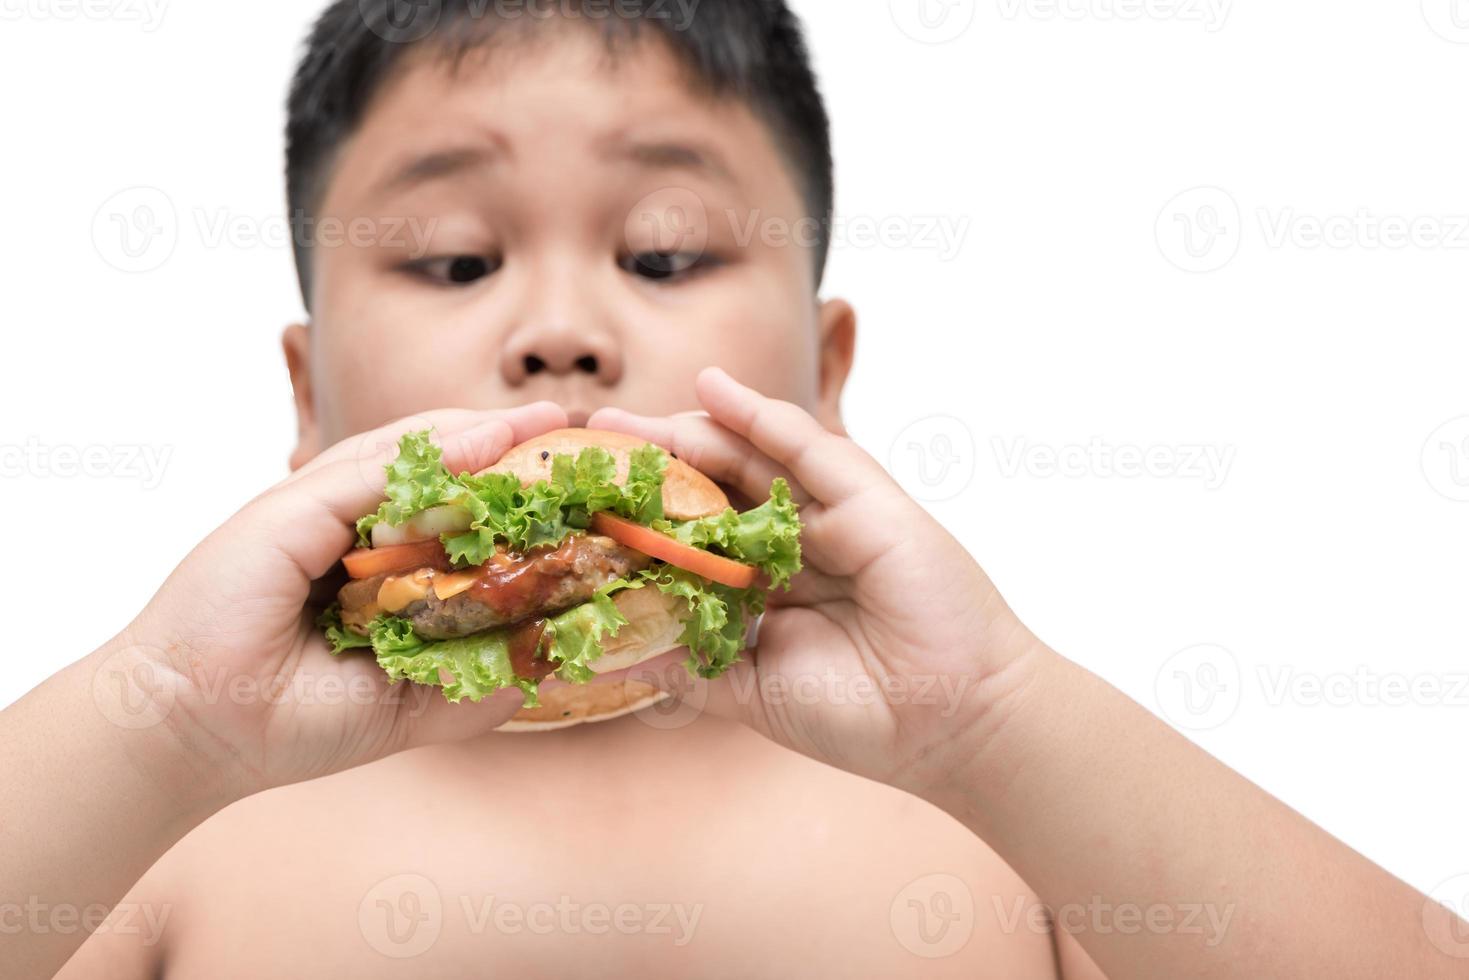 carne de porco Hamburger em obeso gordo Garoto mão fundo isolado foto